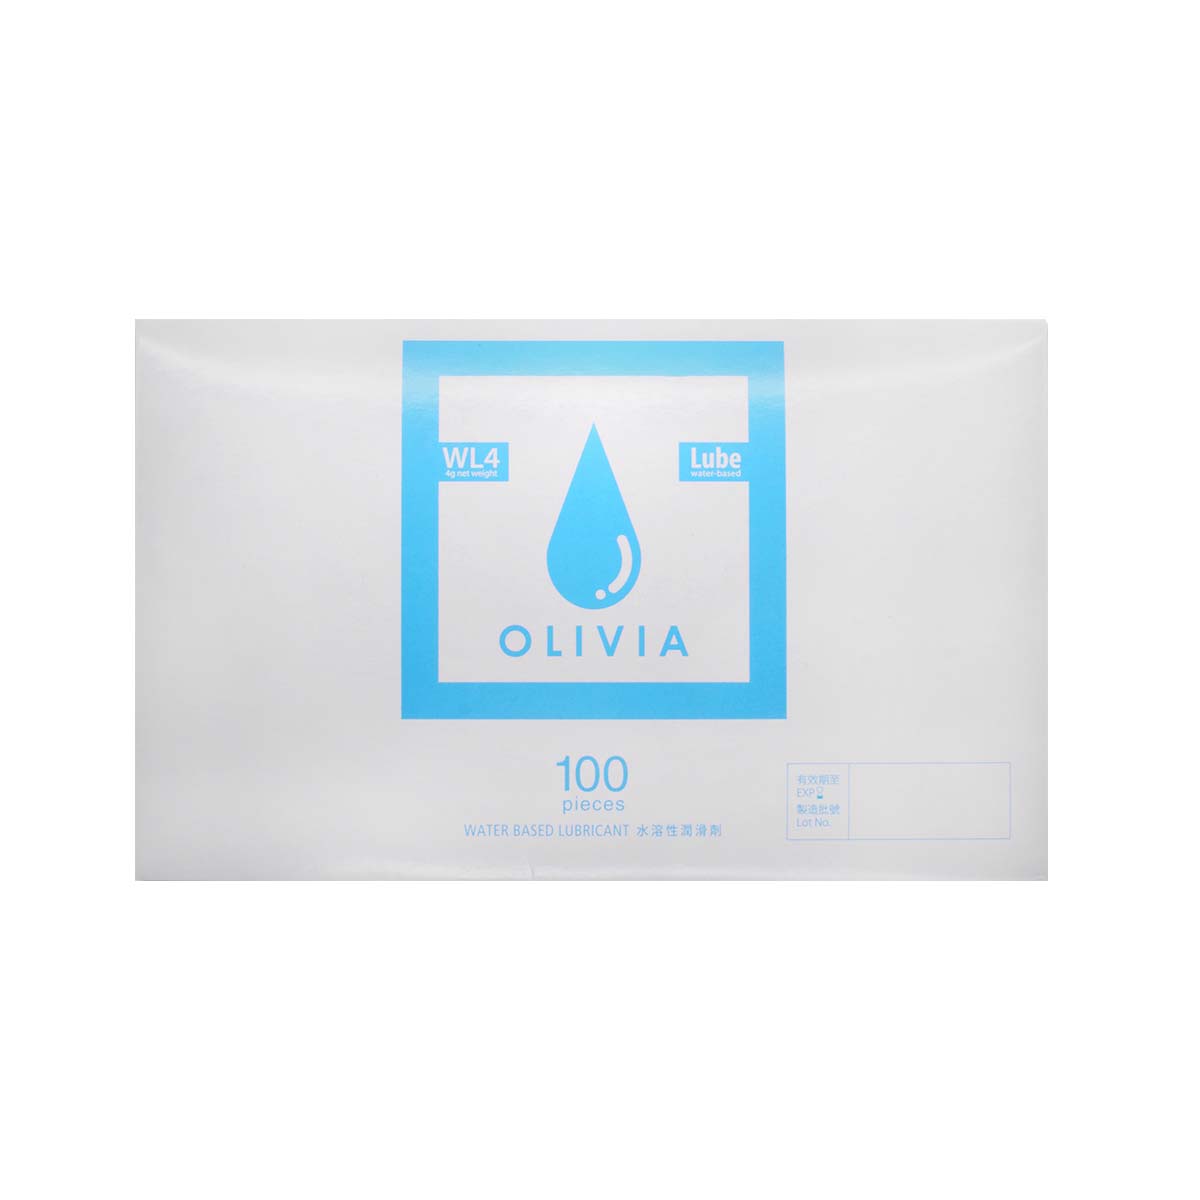 オリヴィア WL4 小袋 100 個入 水性潤滑ゼリー (使用期限 2022 年 10 月)-p_2